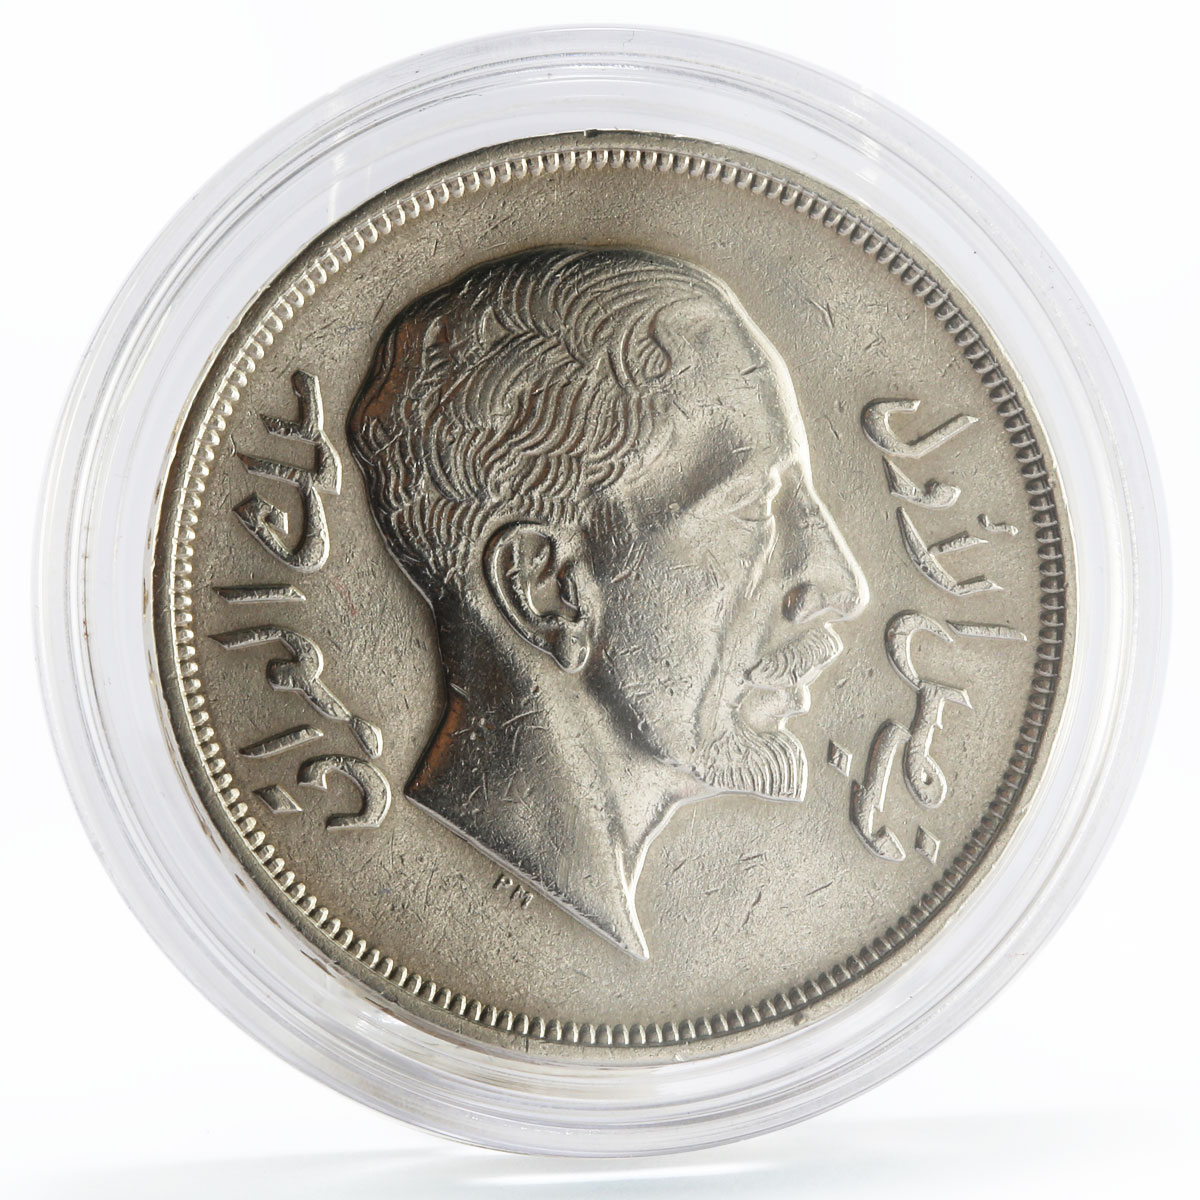 Iraq 1 riyal King of Iraq Faisal I silver coin 1932